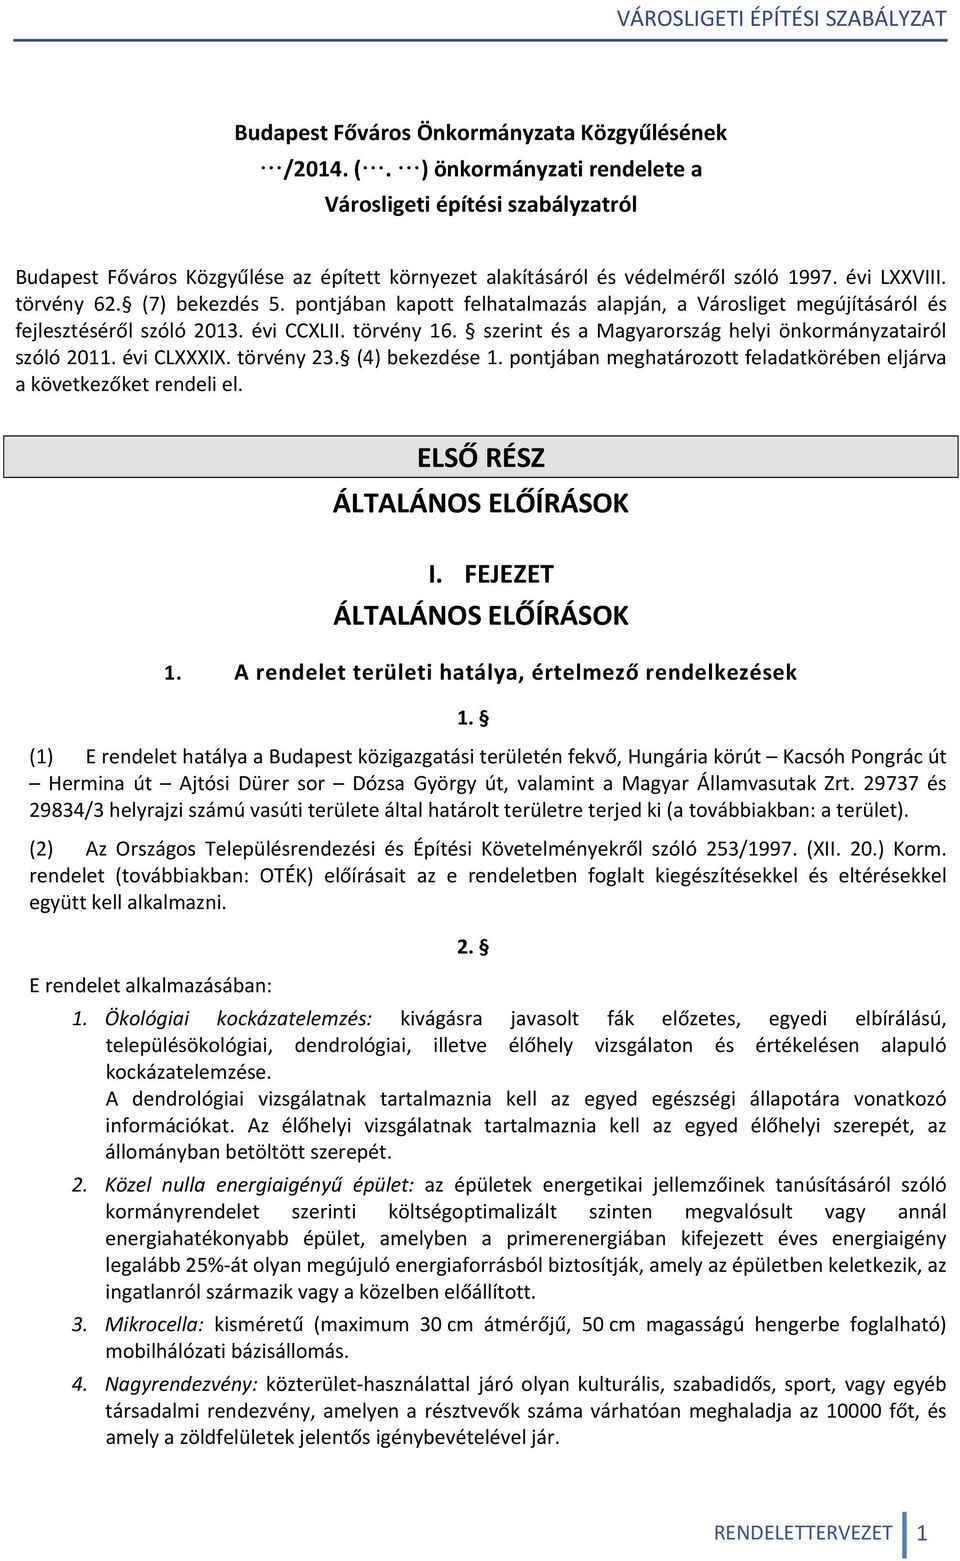 pontjában kapott felhatalmazás alapján, a Városliget megújításáról és fejlesztéséről szóló 2013. évi CCXLII. törvény 16. szerint és a Magyarország helyi önkormányzatairól szóló 2011. évi CLXXXIX.